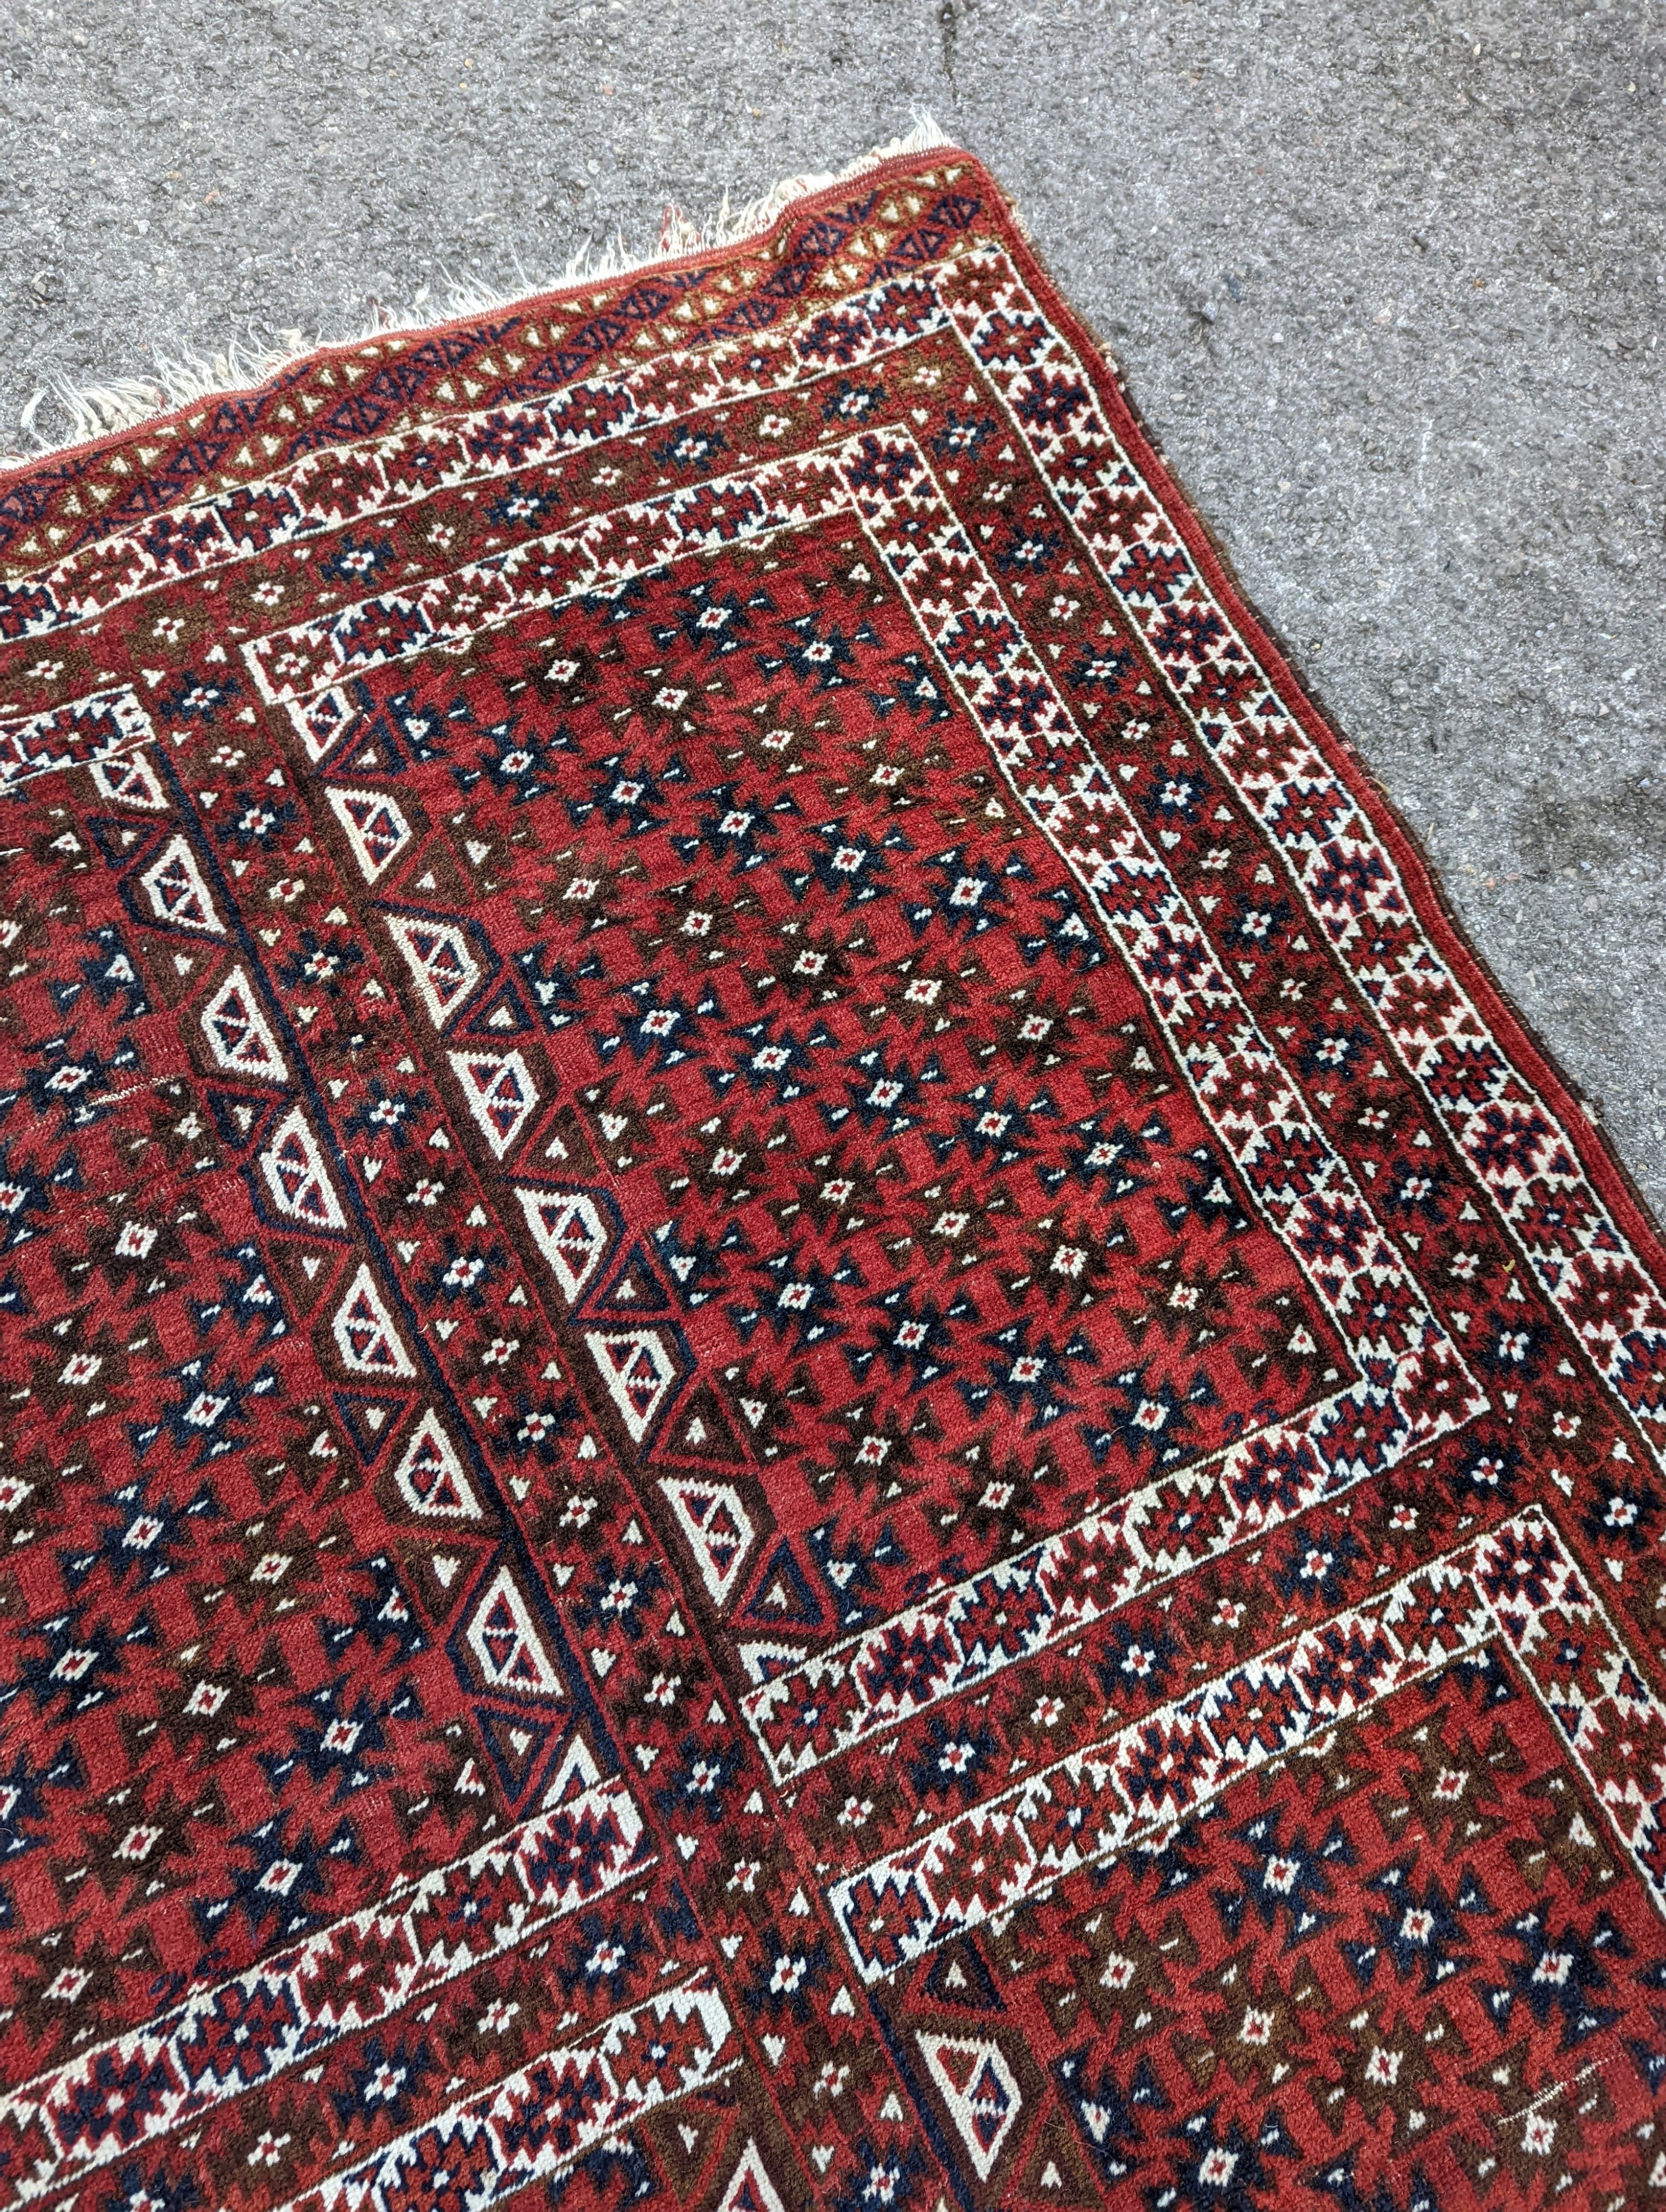 A Belouch red ground rug, 200 x 130cm